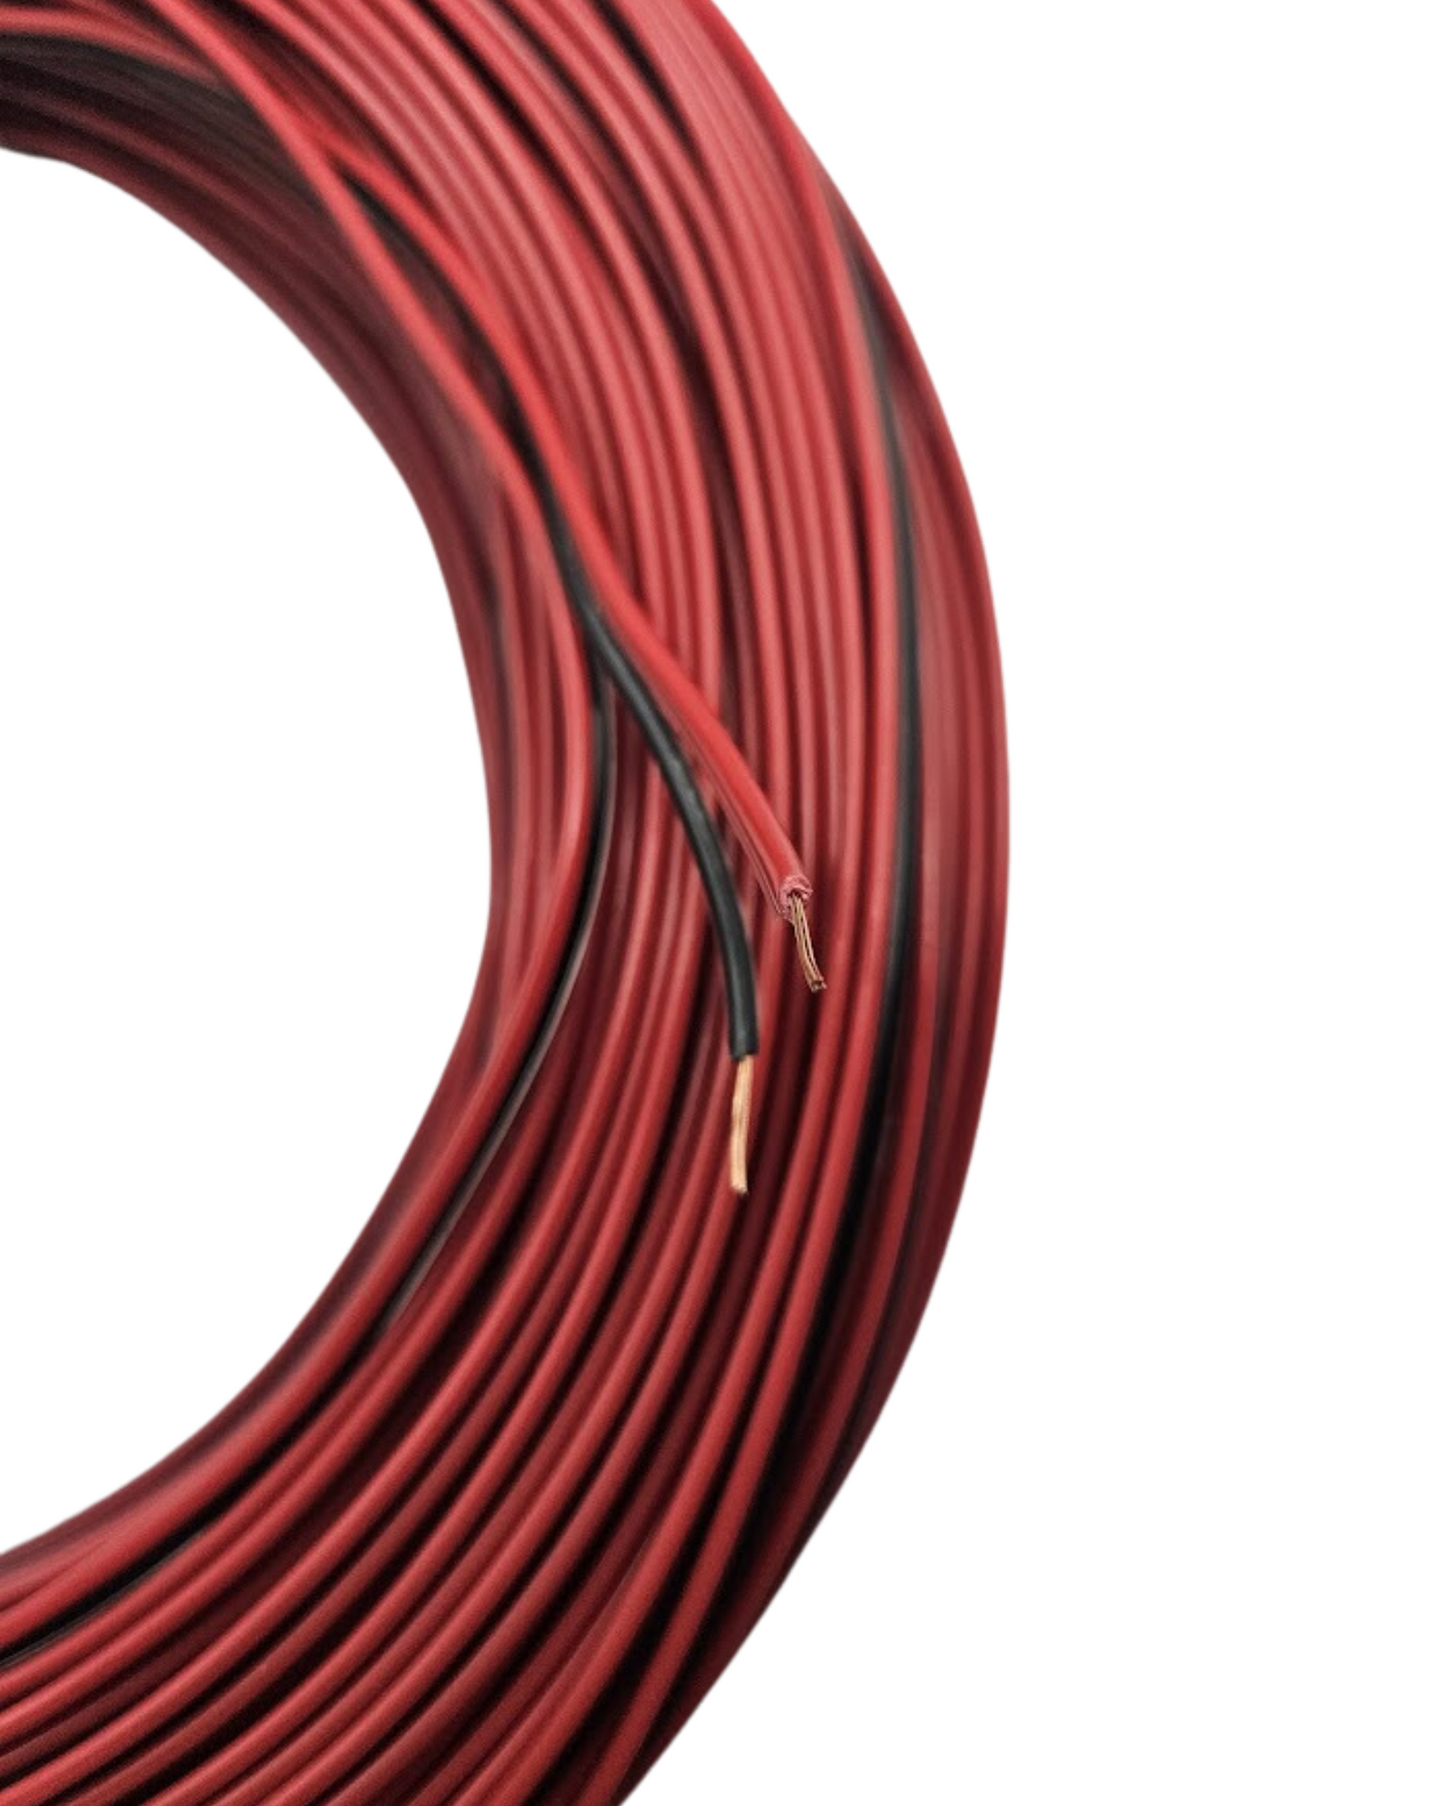 Cable bicolor calibre 22AWG 100% cobre | Cable bipolar para tira de LED